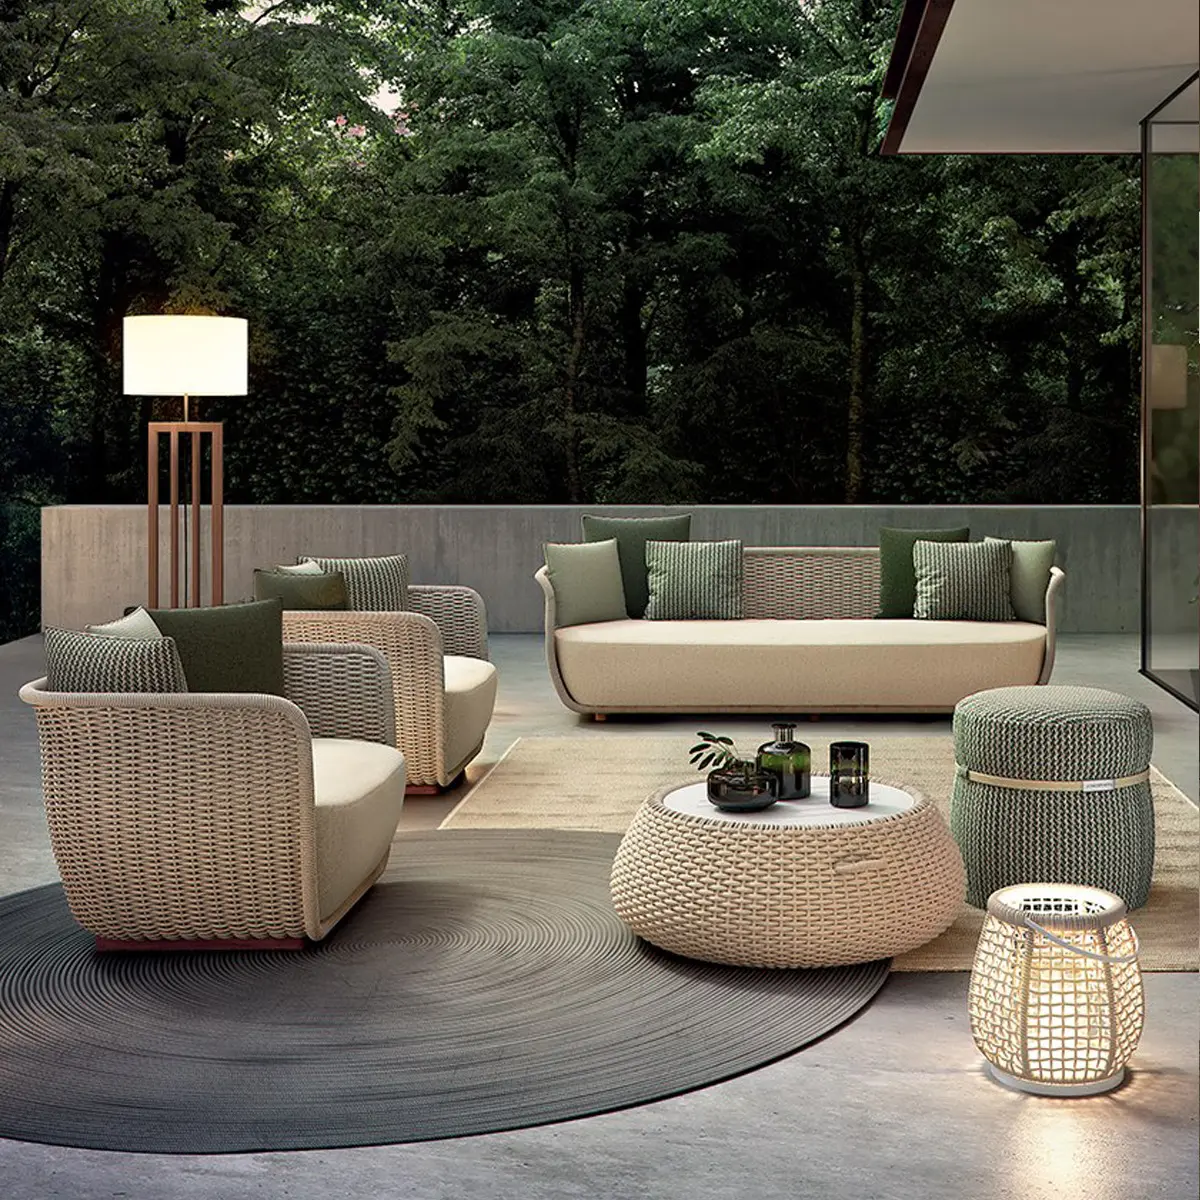 Conjunto de sofás de aluminio para exteriores, muebles modernos de exterior, impermeables, juego de muebles modulares para patio y jardín